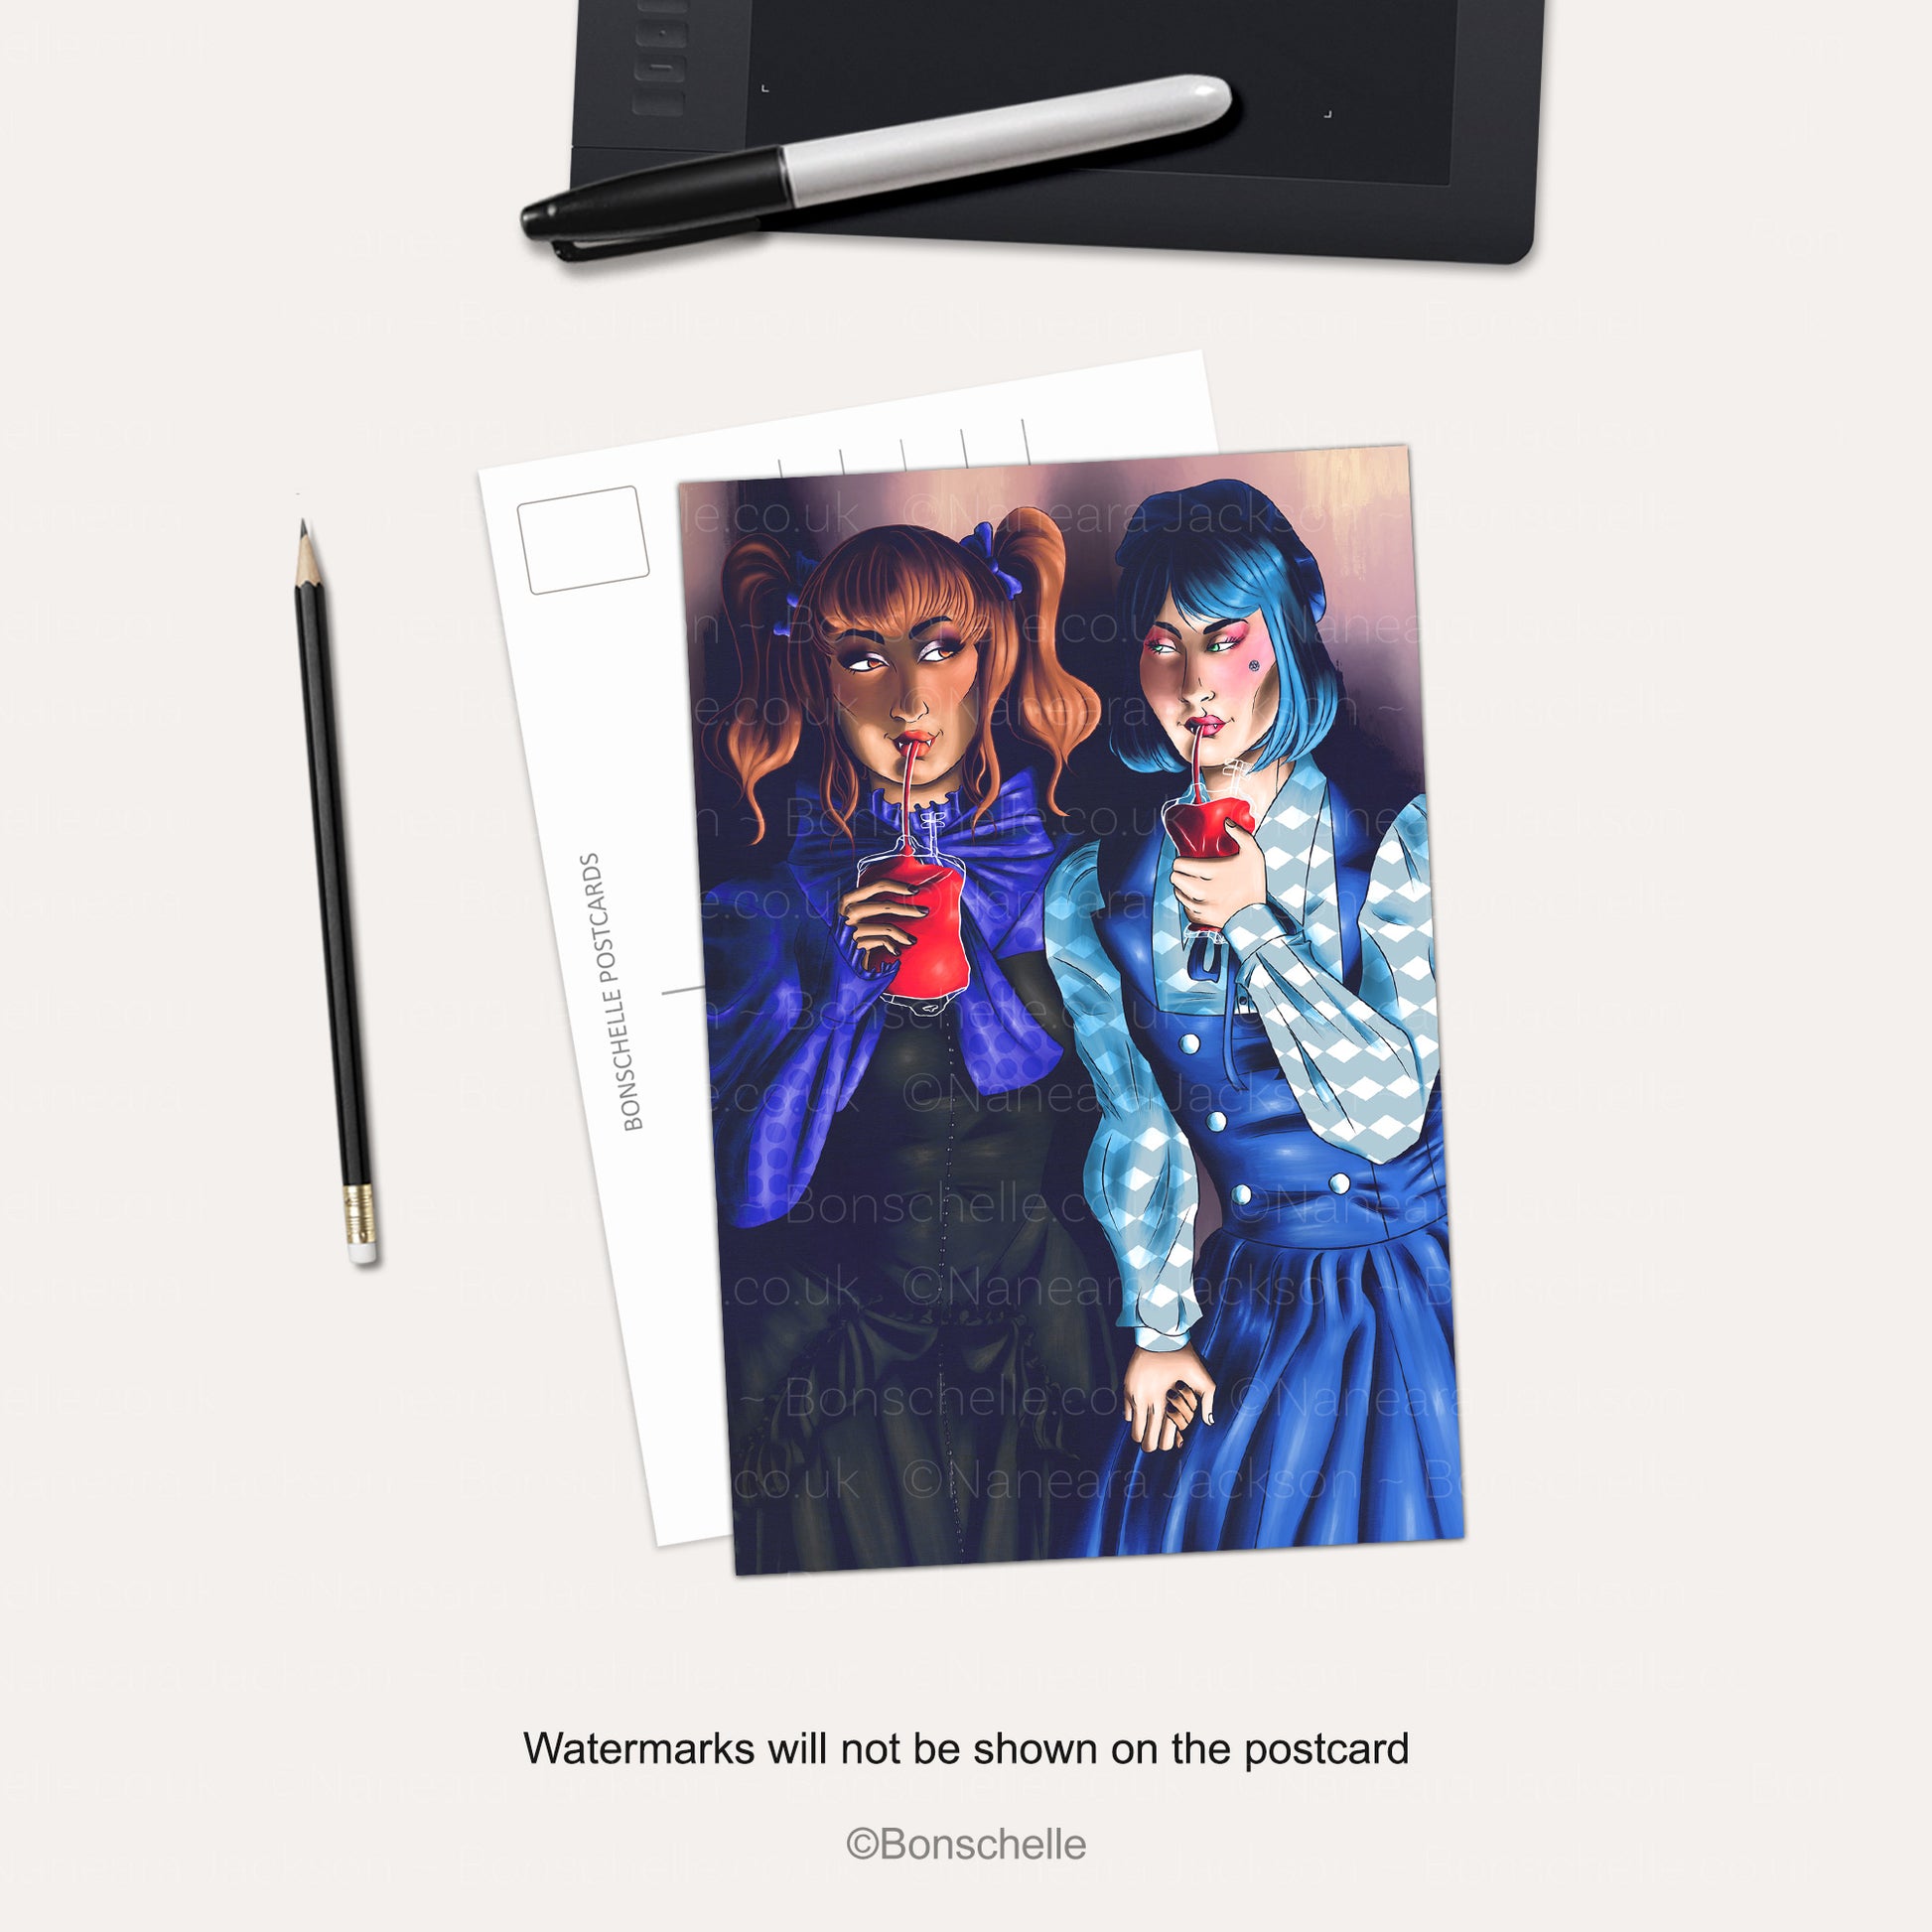 Vampire Lolita Girlfriends Postcard Art Print on a desk